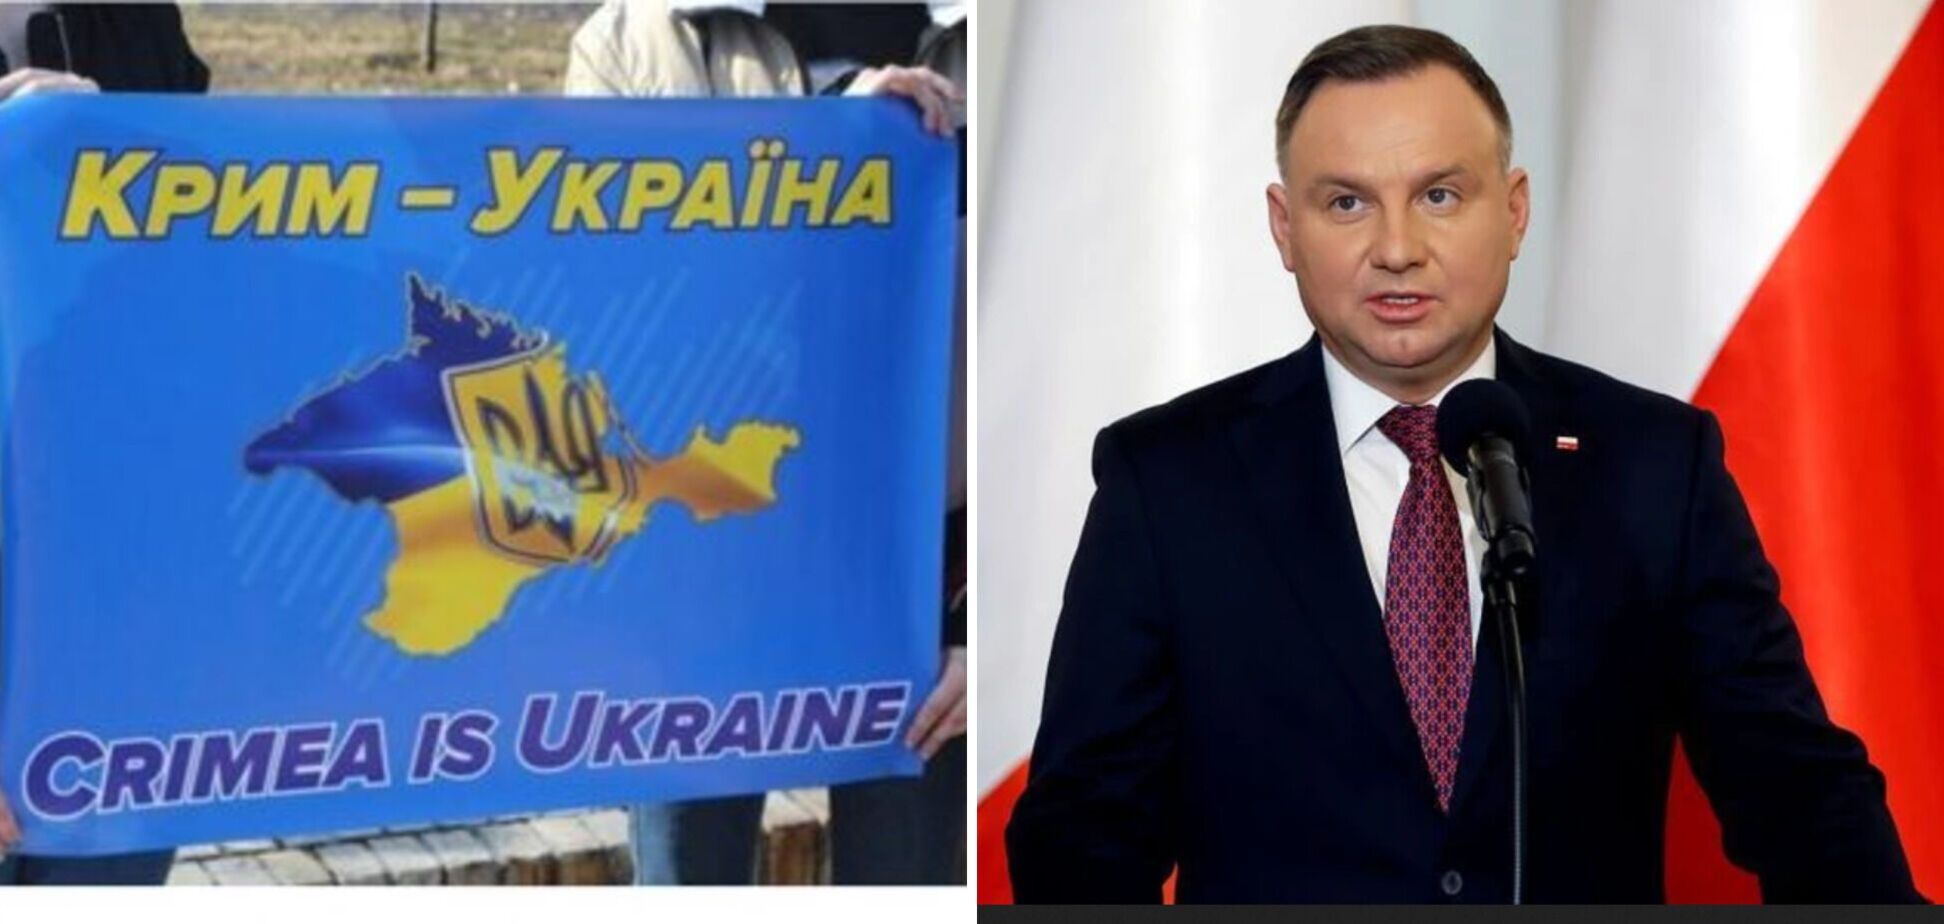 Дуда: Крым – это Украина, и освобождать от российской оккупации нужно все захваченные территории